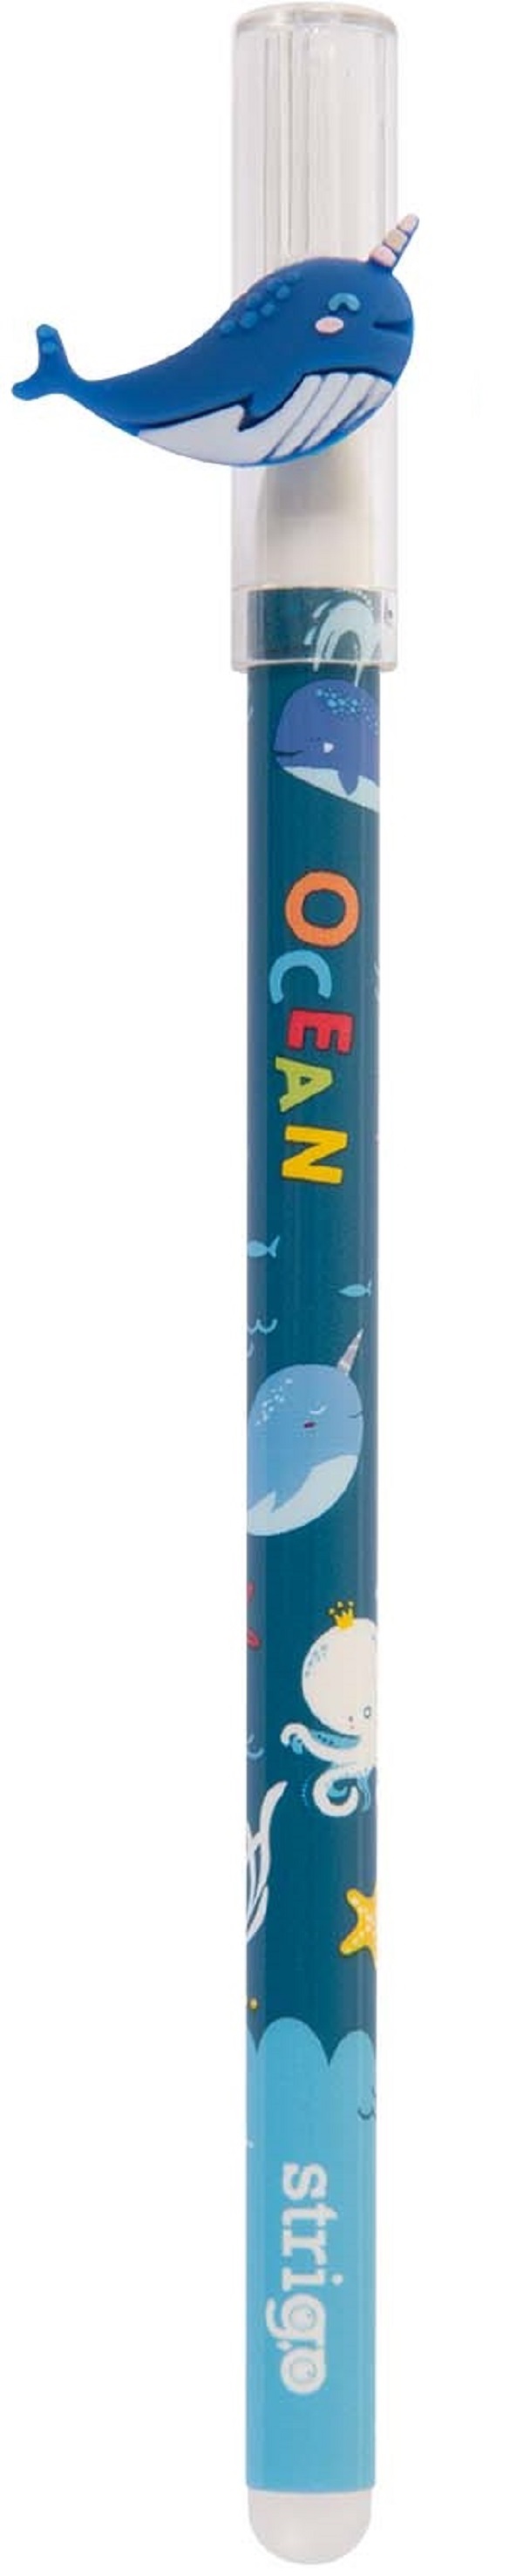 Pix cerneala termosensibila: Balena. Seria Ocean Animals